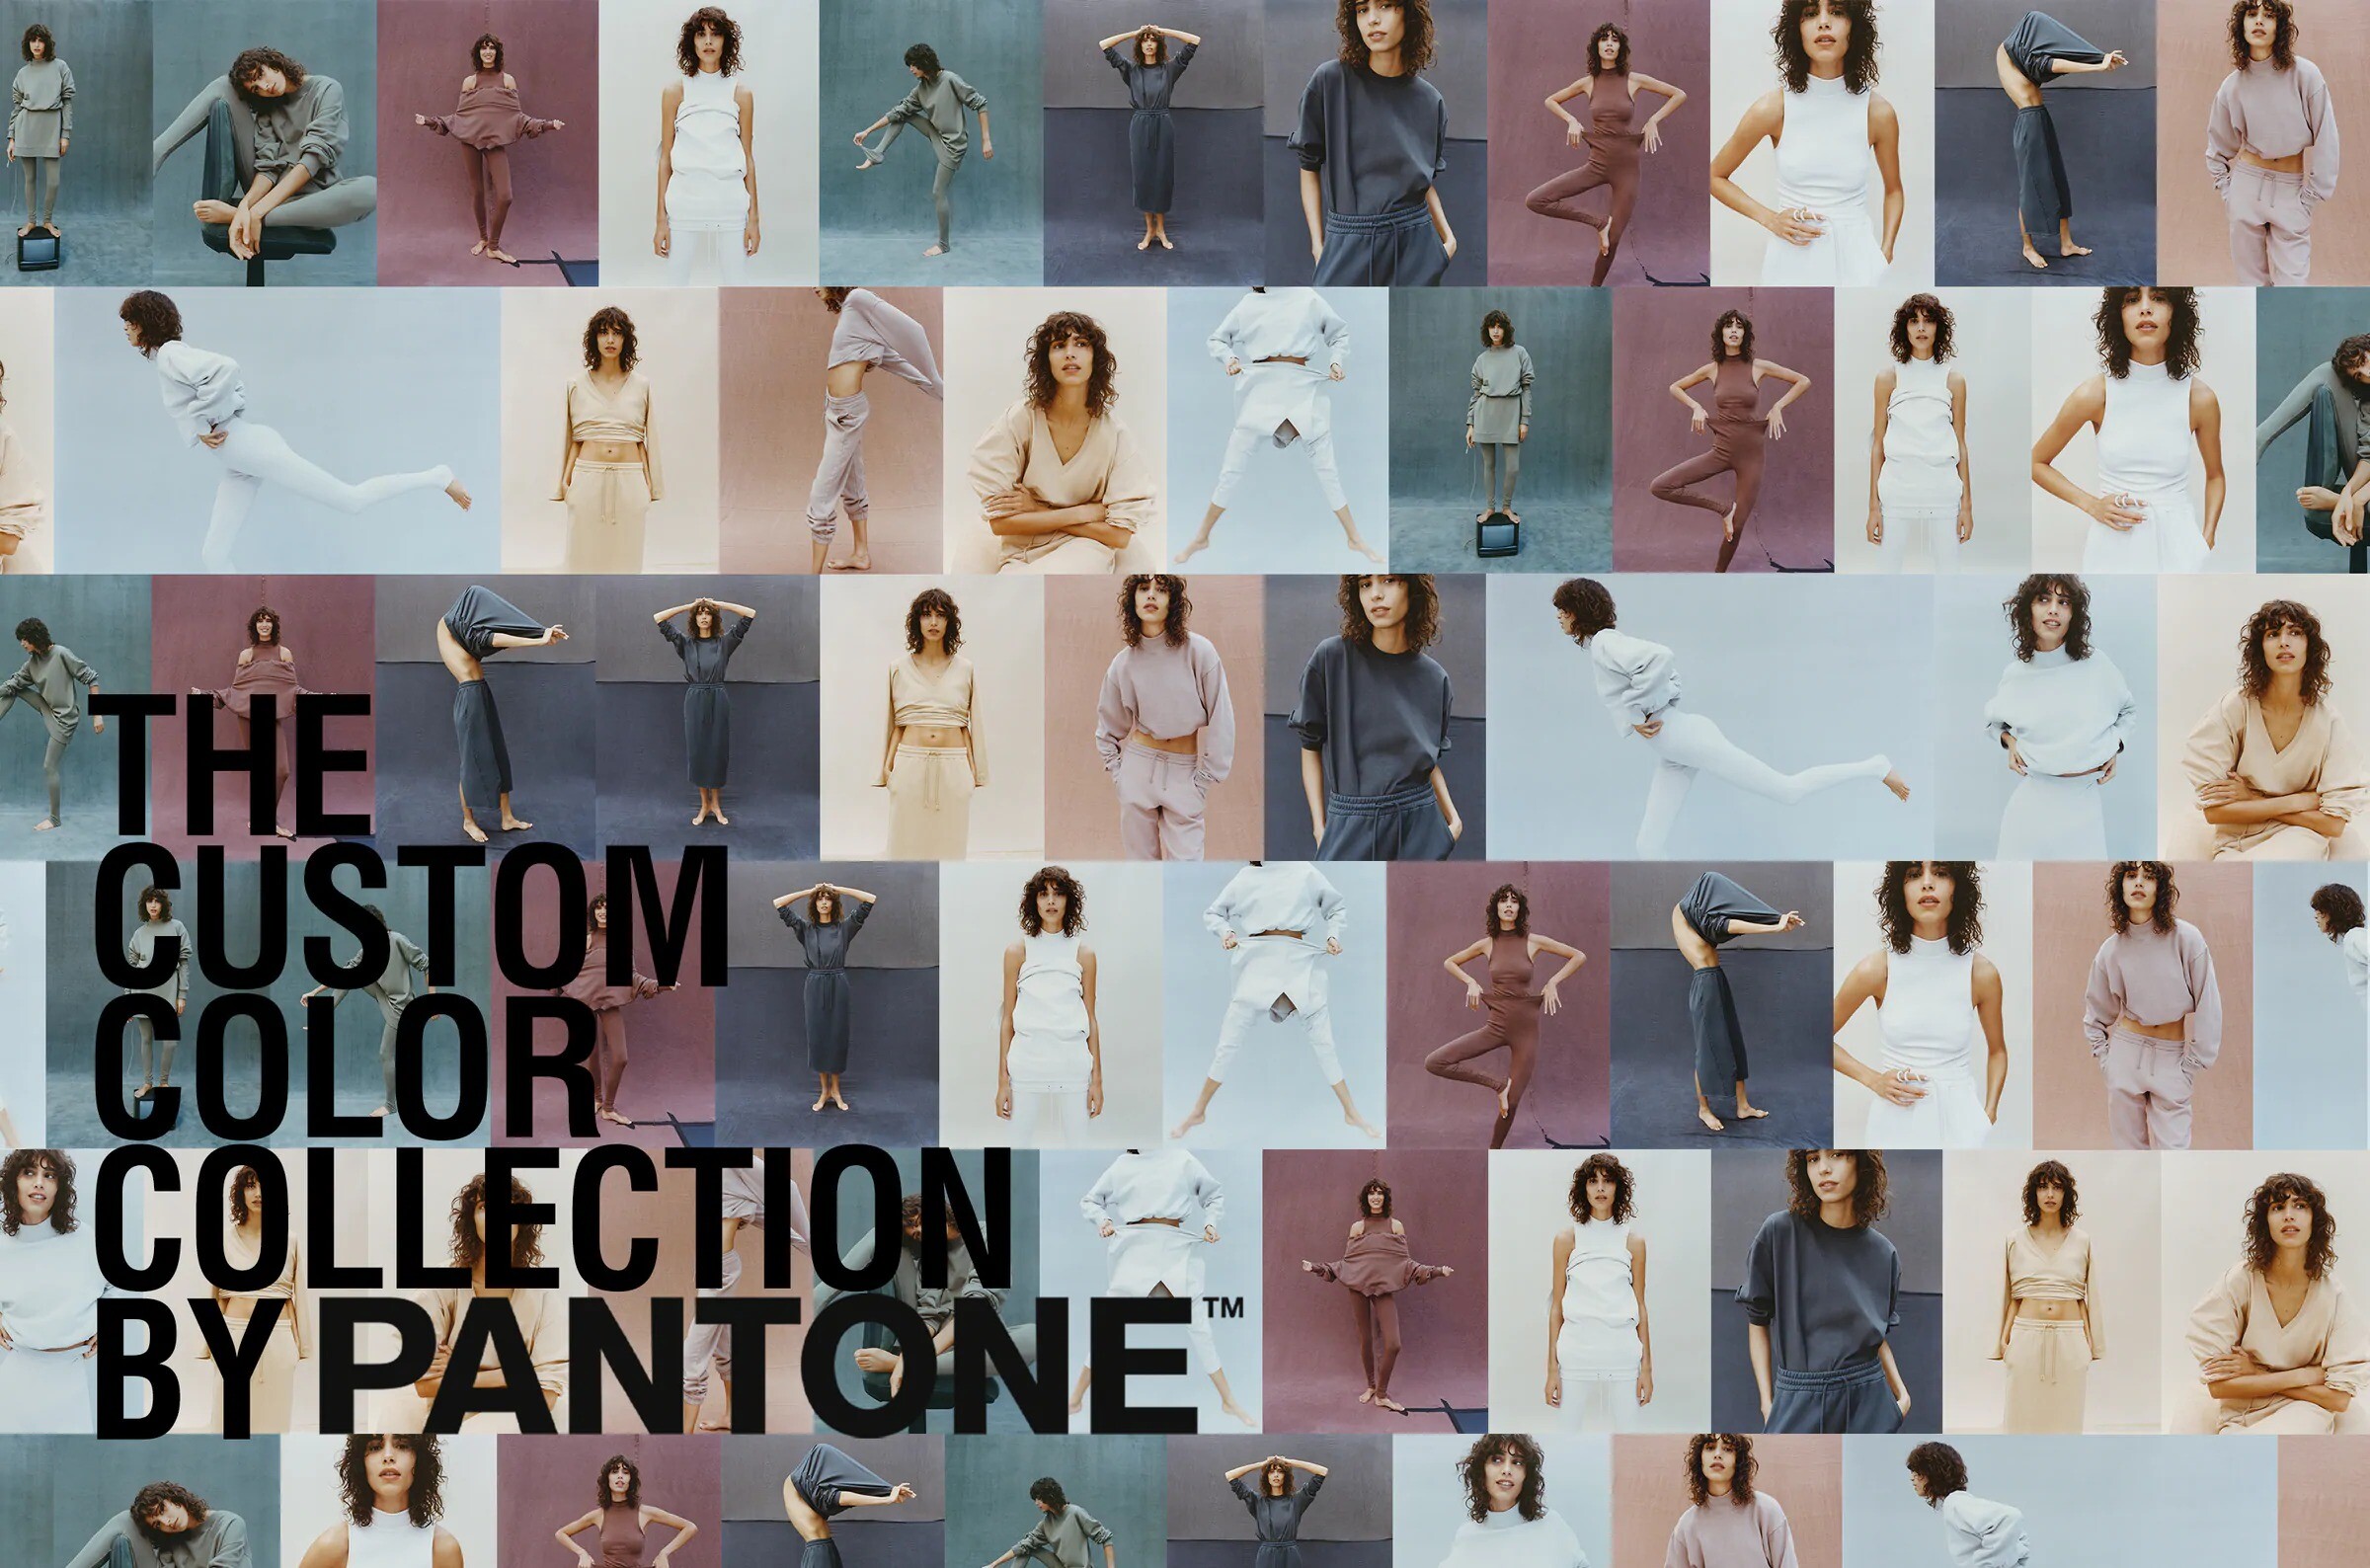 Zara presenta una colección comfy junto a Pantone